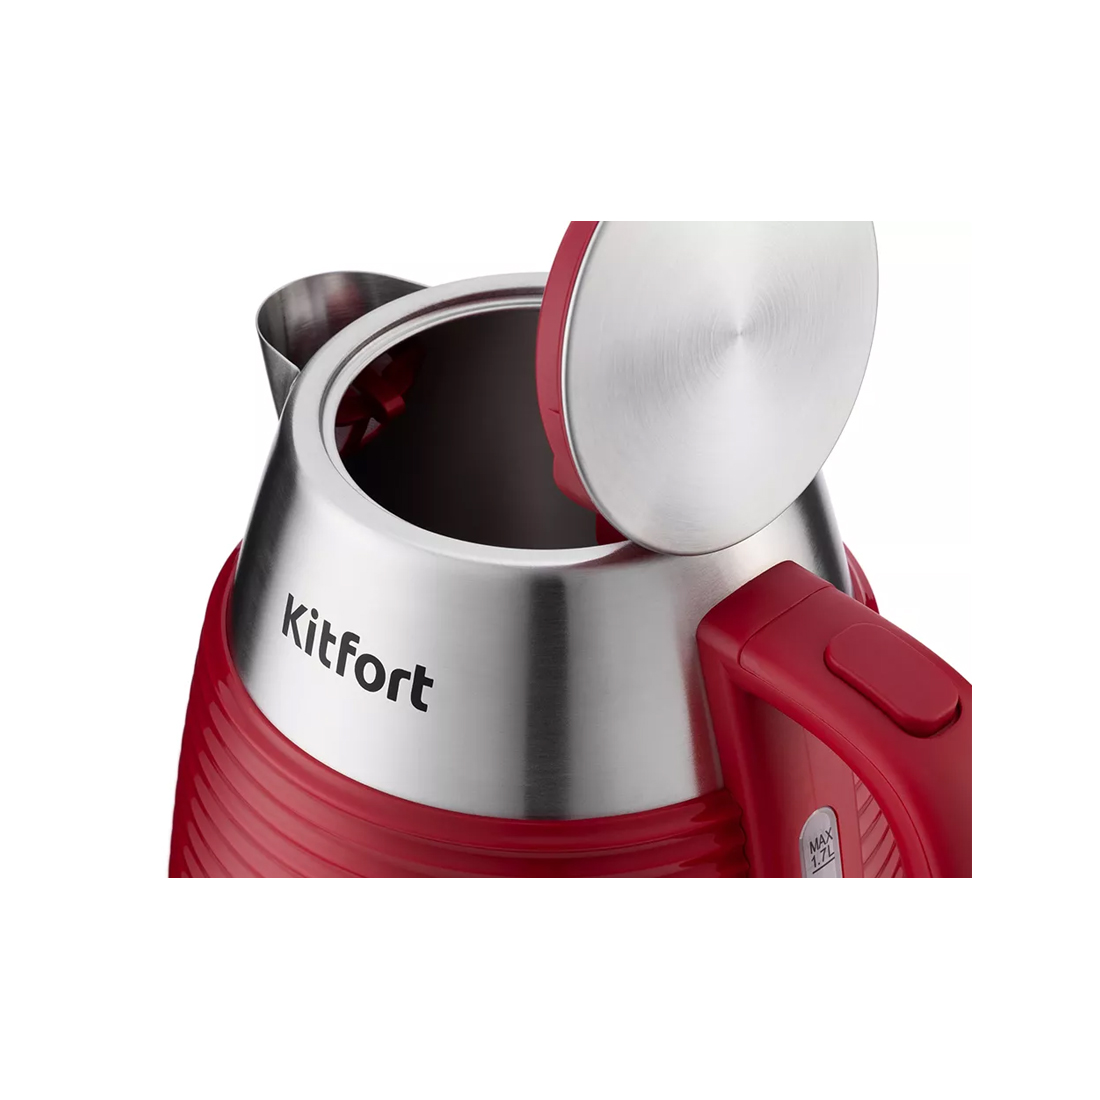 Чайник электрический Kitfort KT-695-2 красный